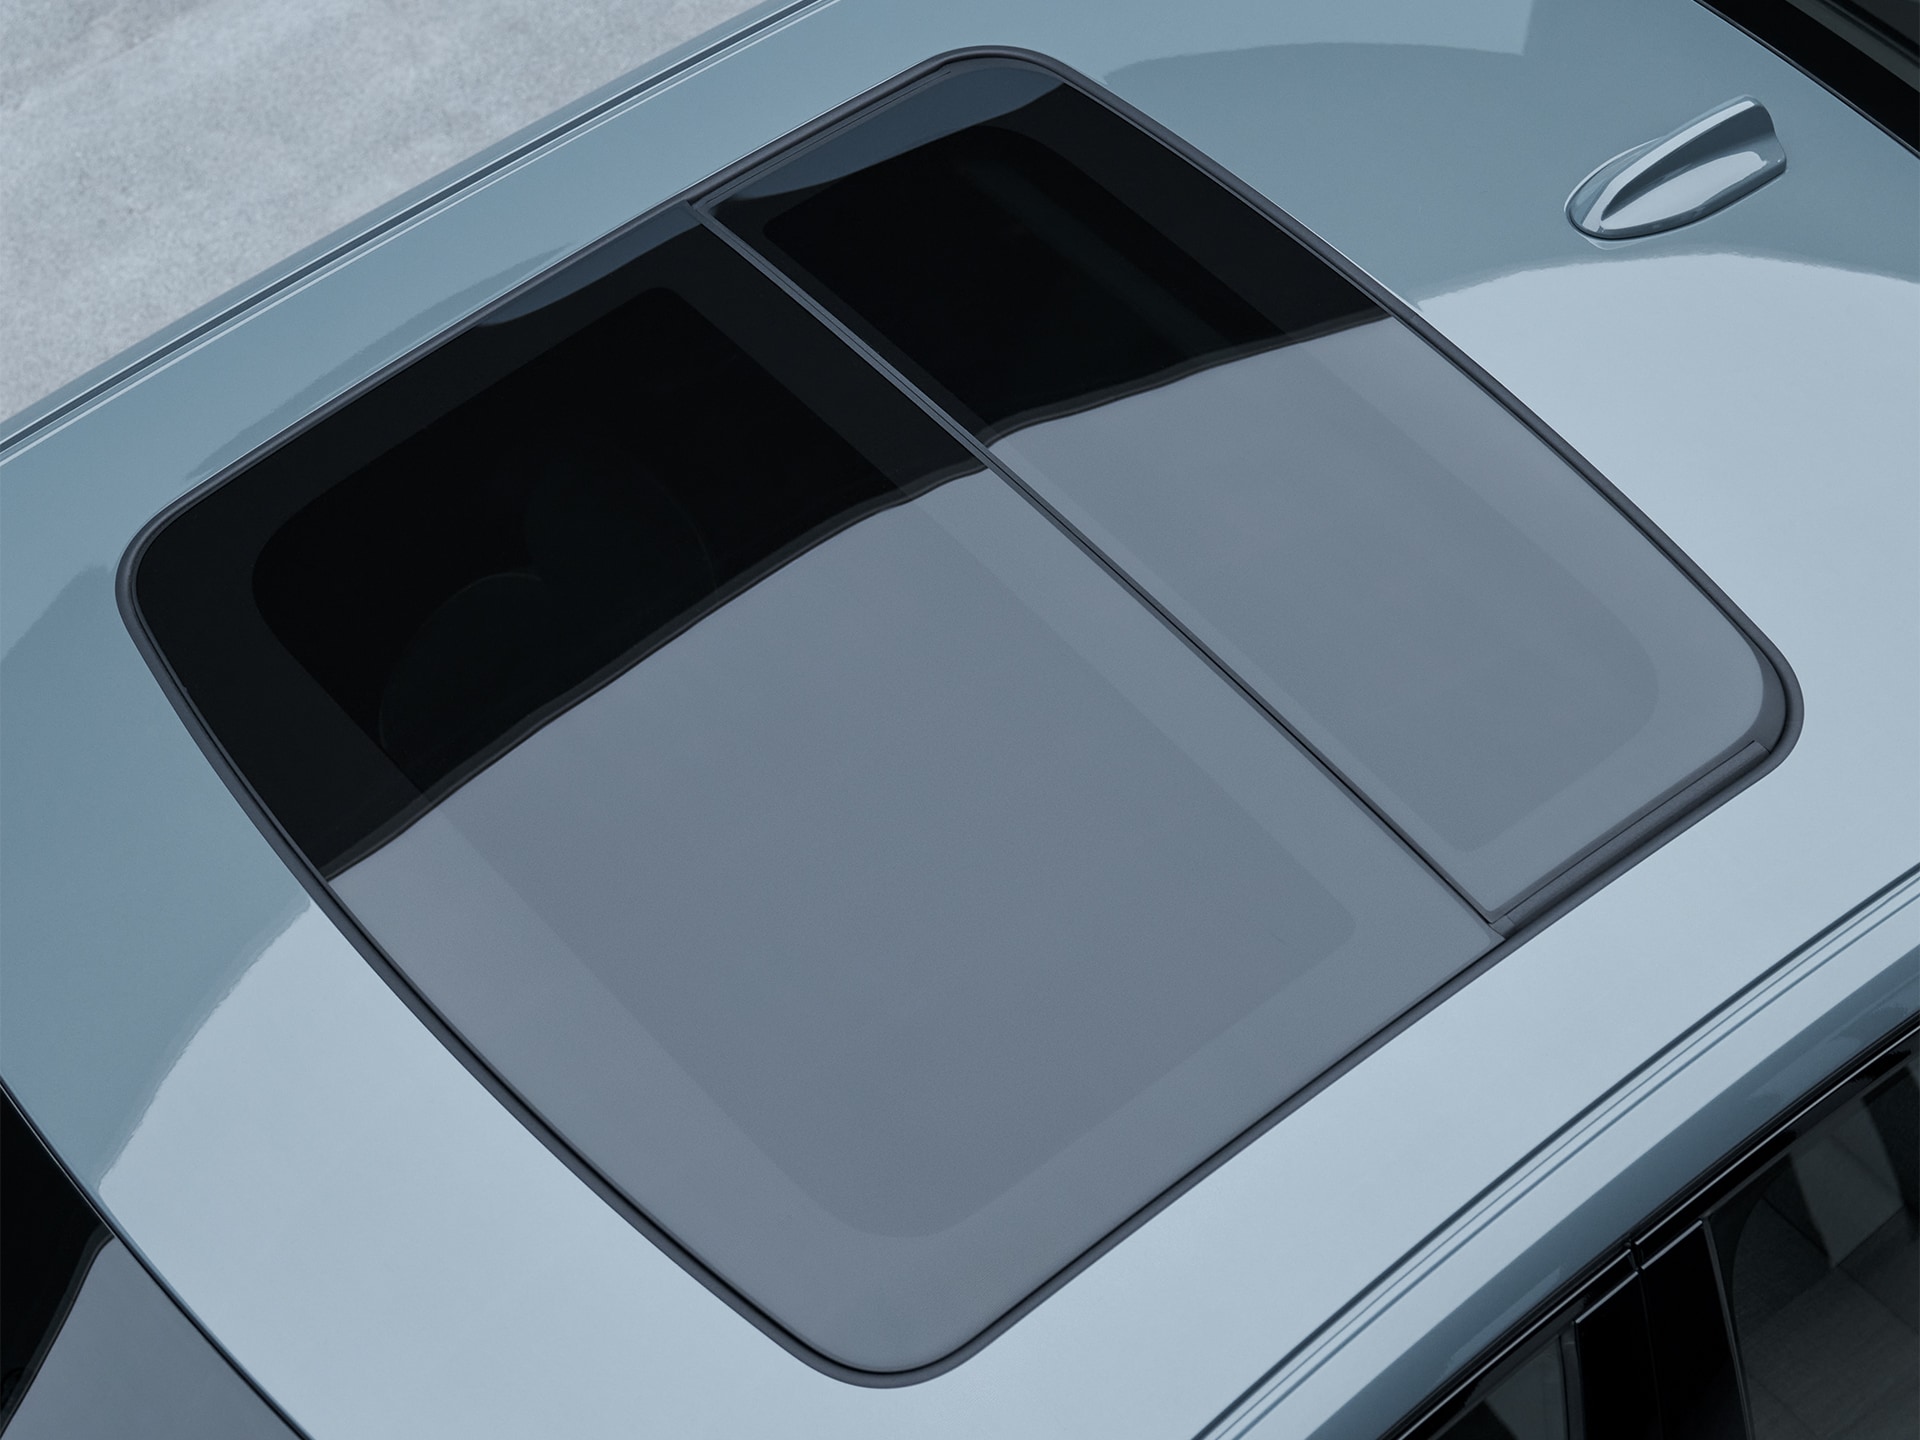 السقف البانورامي في سيارة فولفو S60 سيدان.